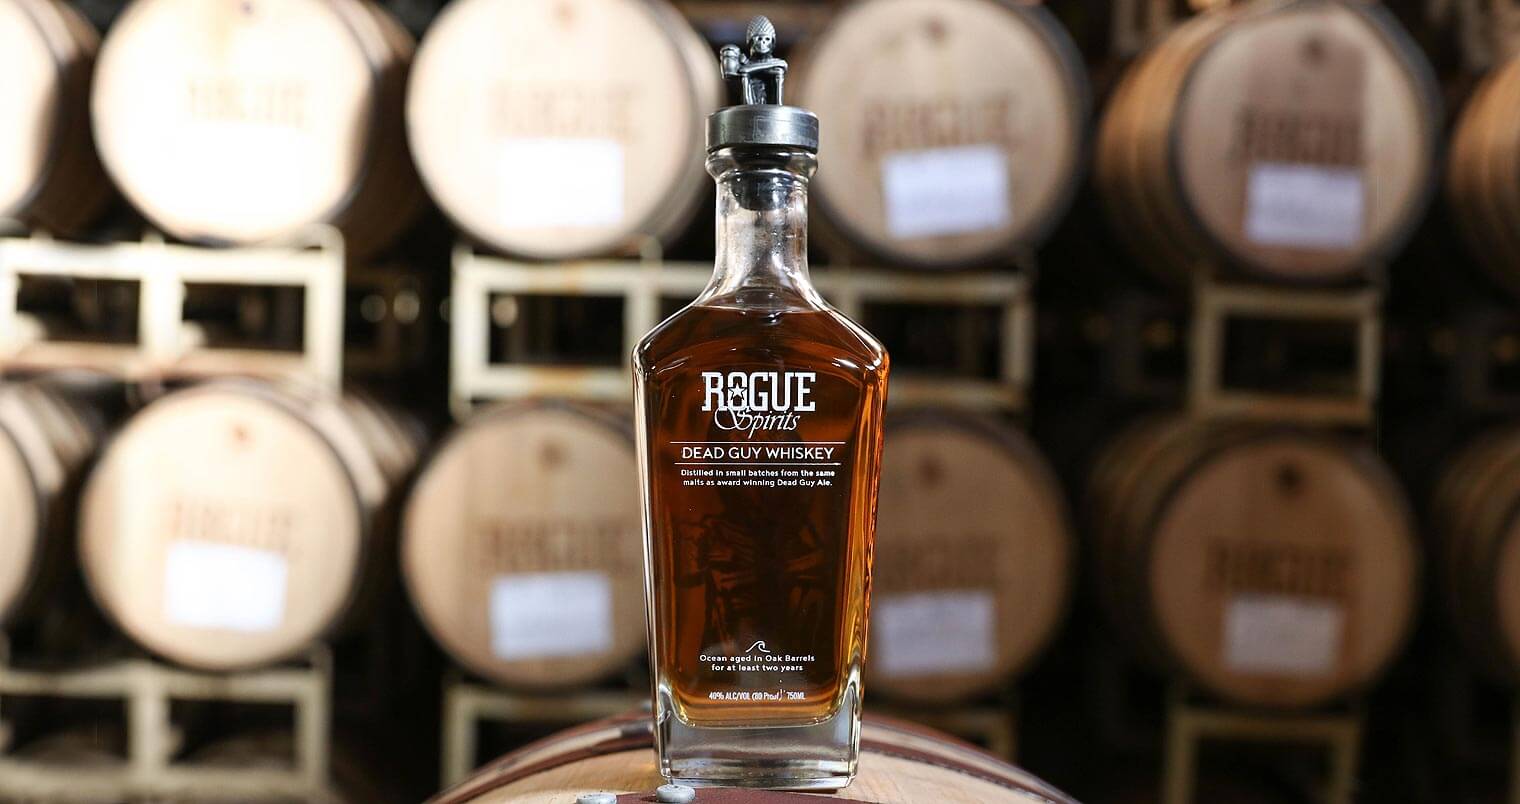 Rogue Ales distiller, whiskey bottle on barrel, barrel room background, featured image